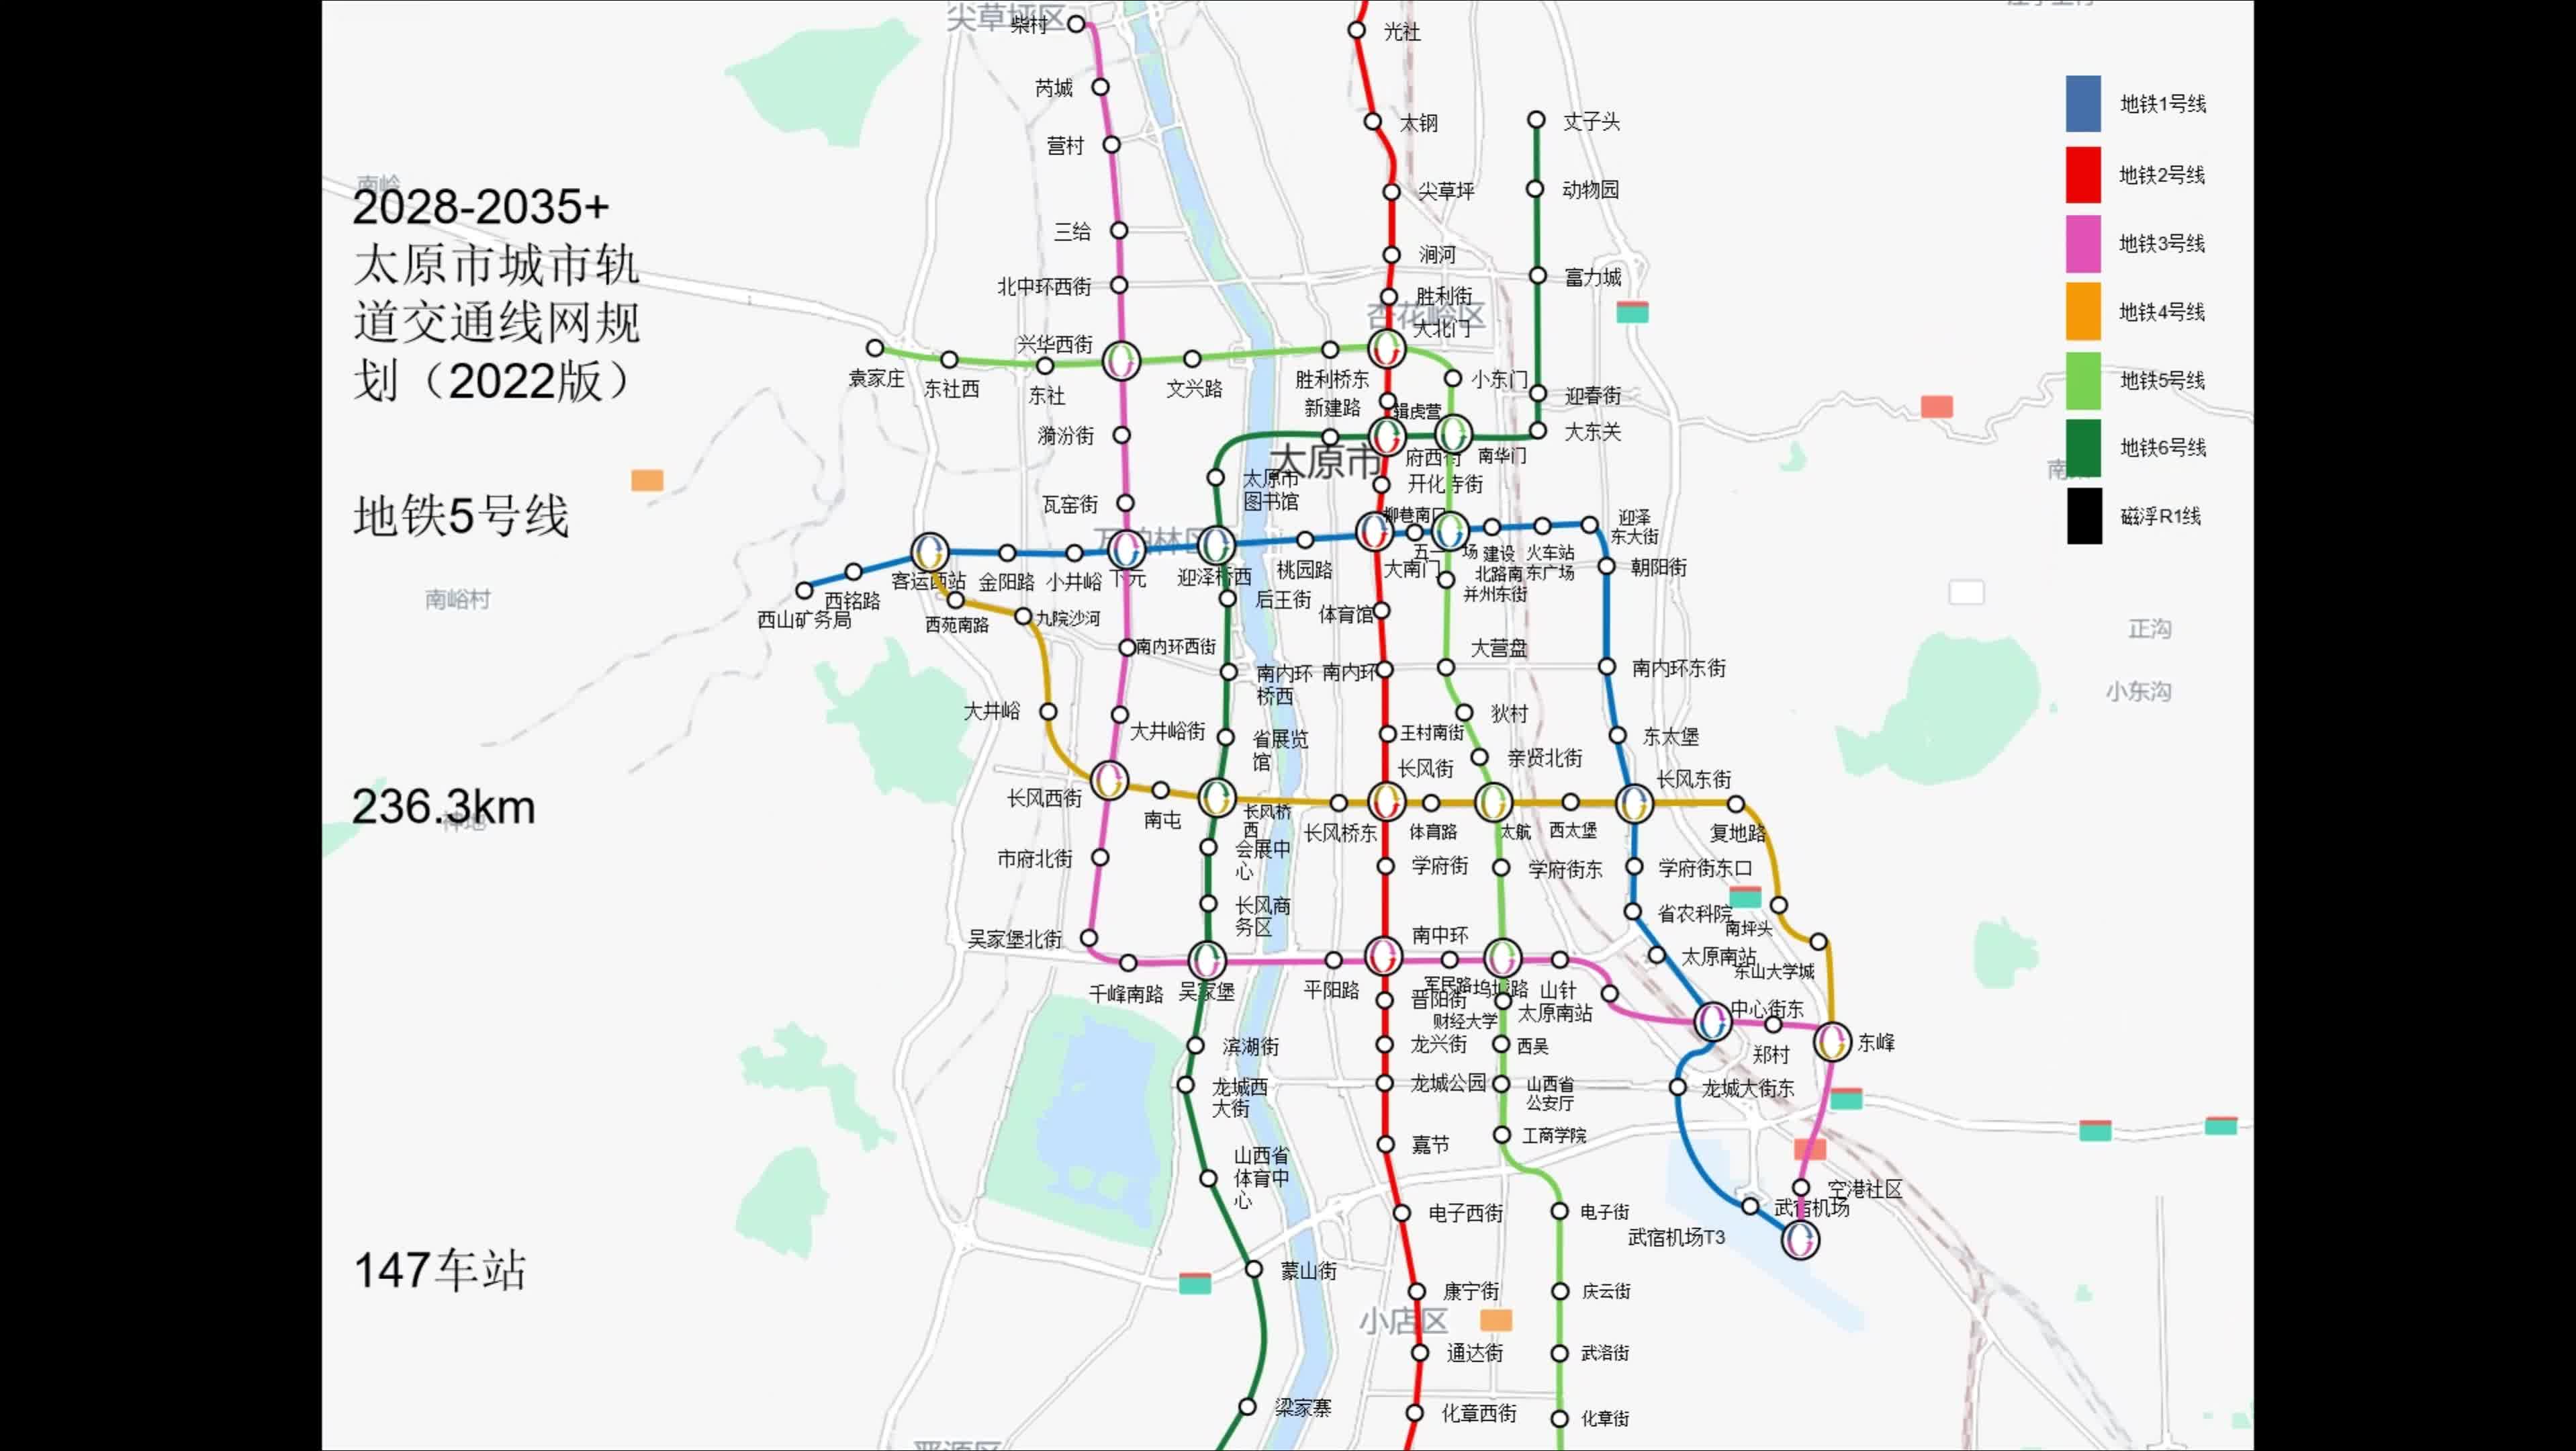 太原地铁动态规划演示2020-2035